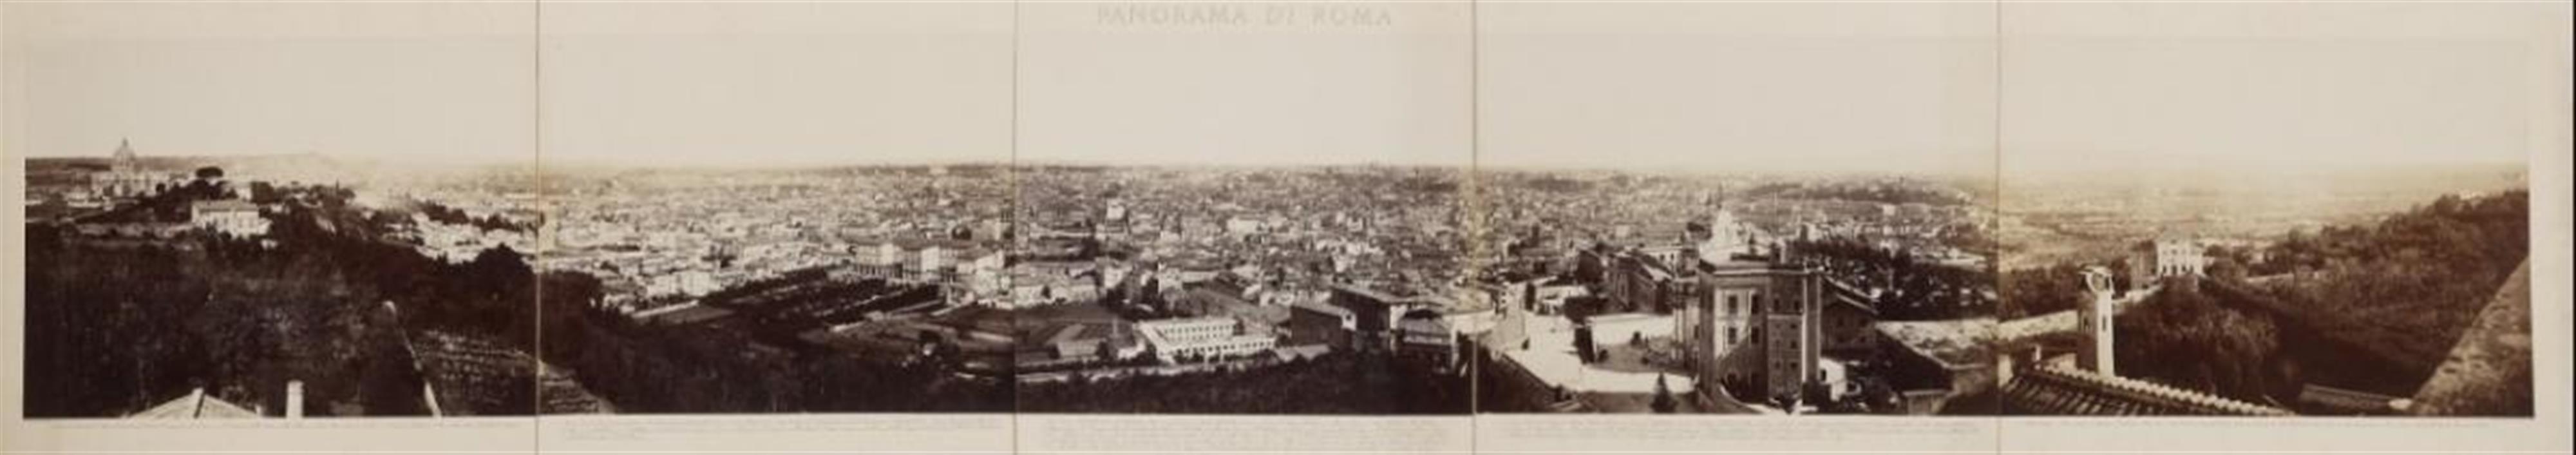 Domenico Anderson - PANORAMA DI ROMA - image-1